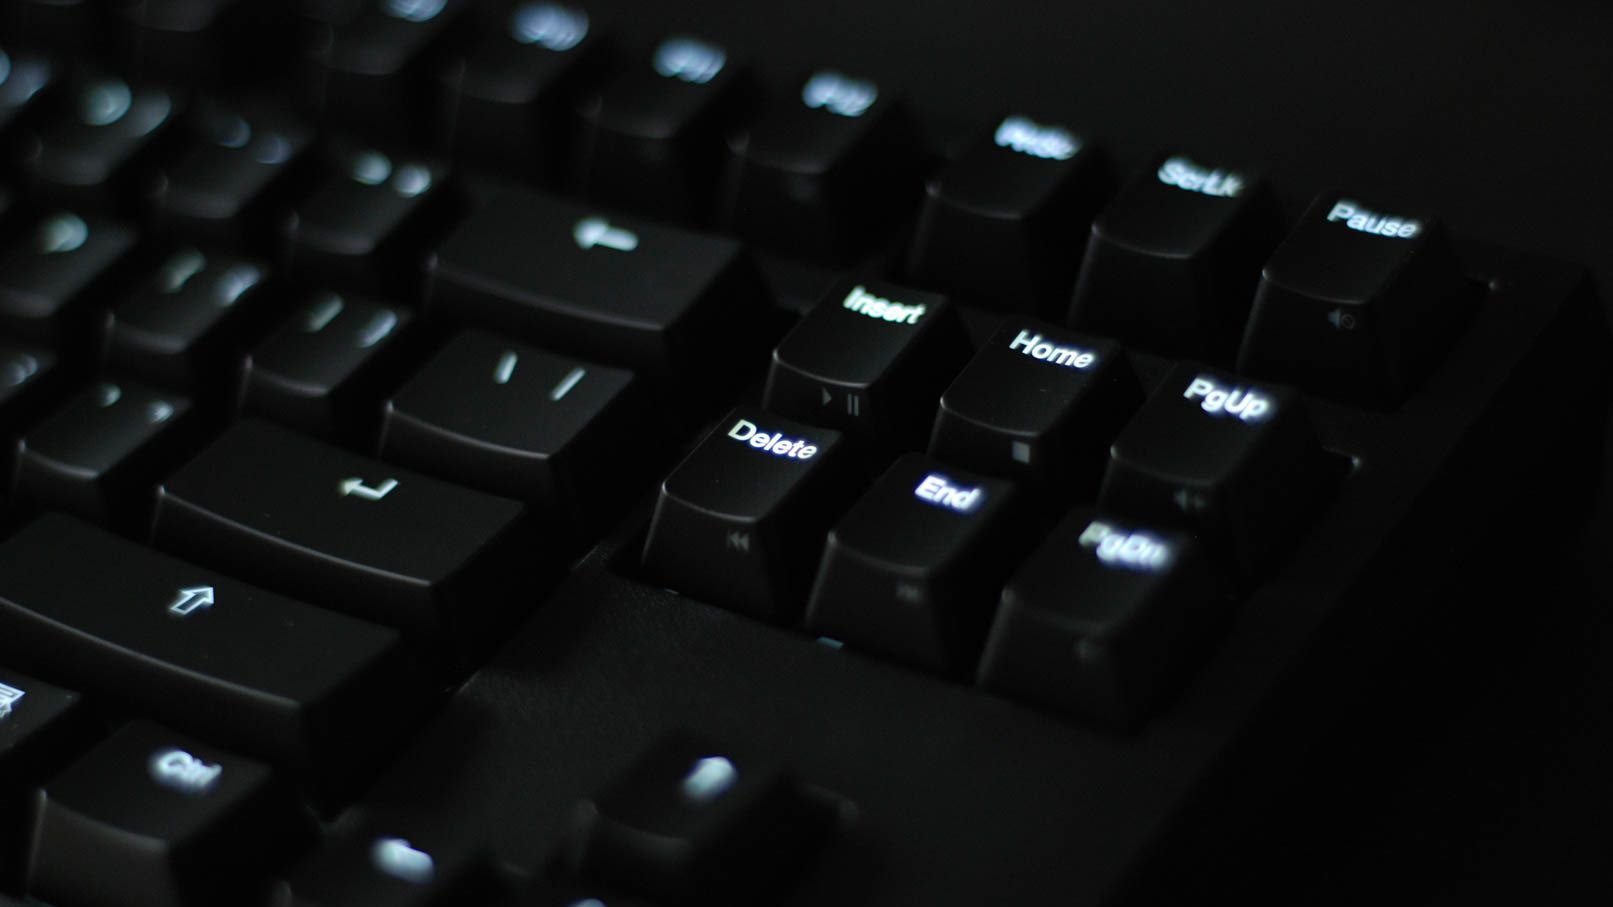 Delete Key on a keyboard